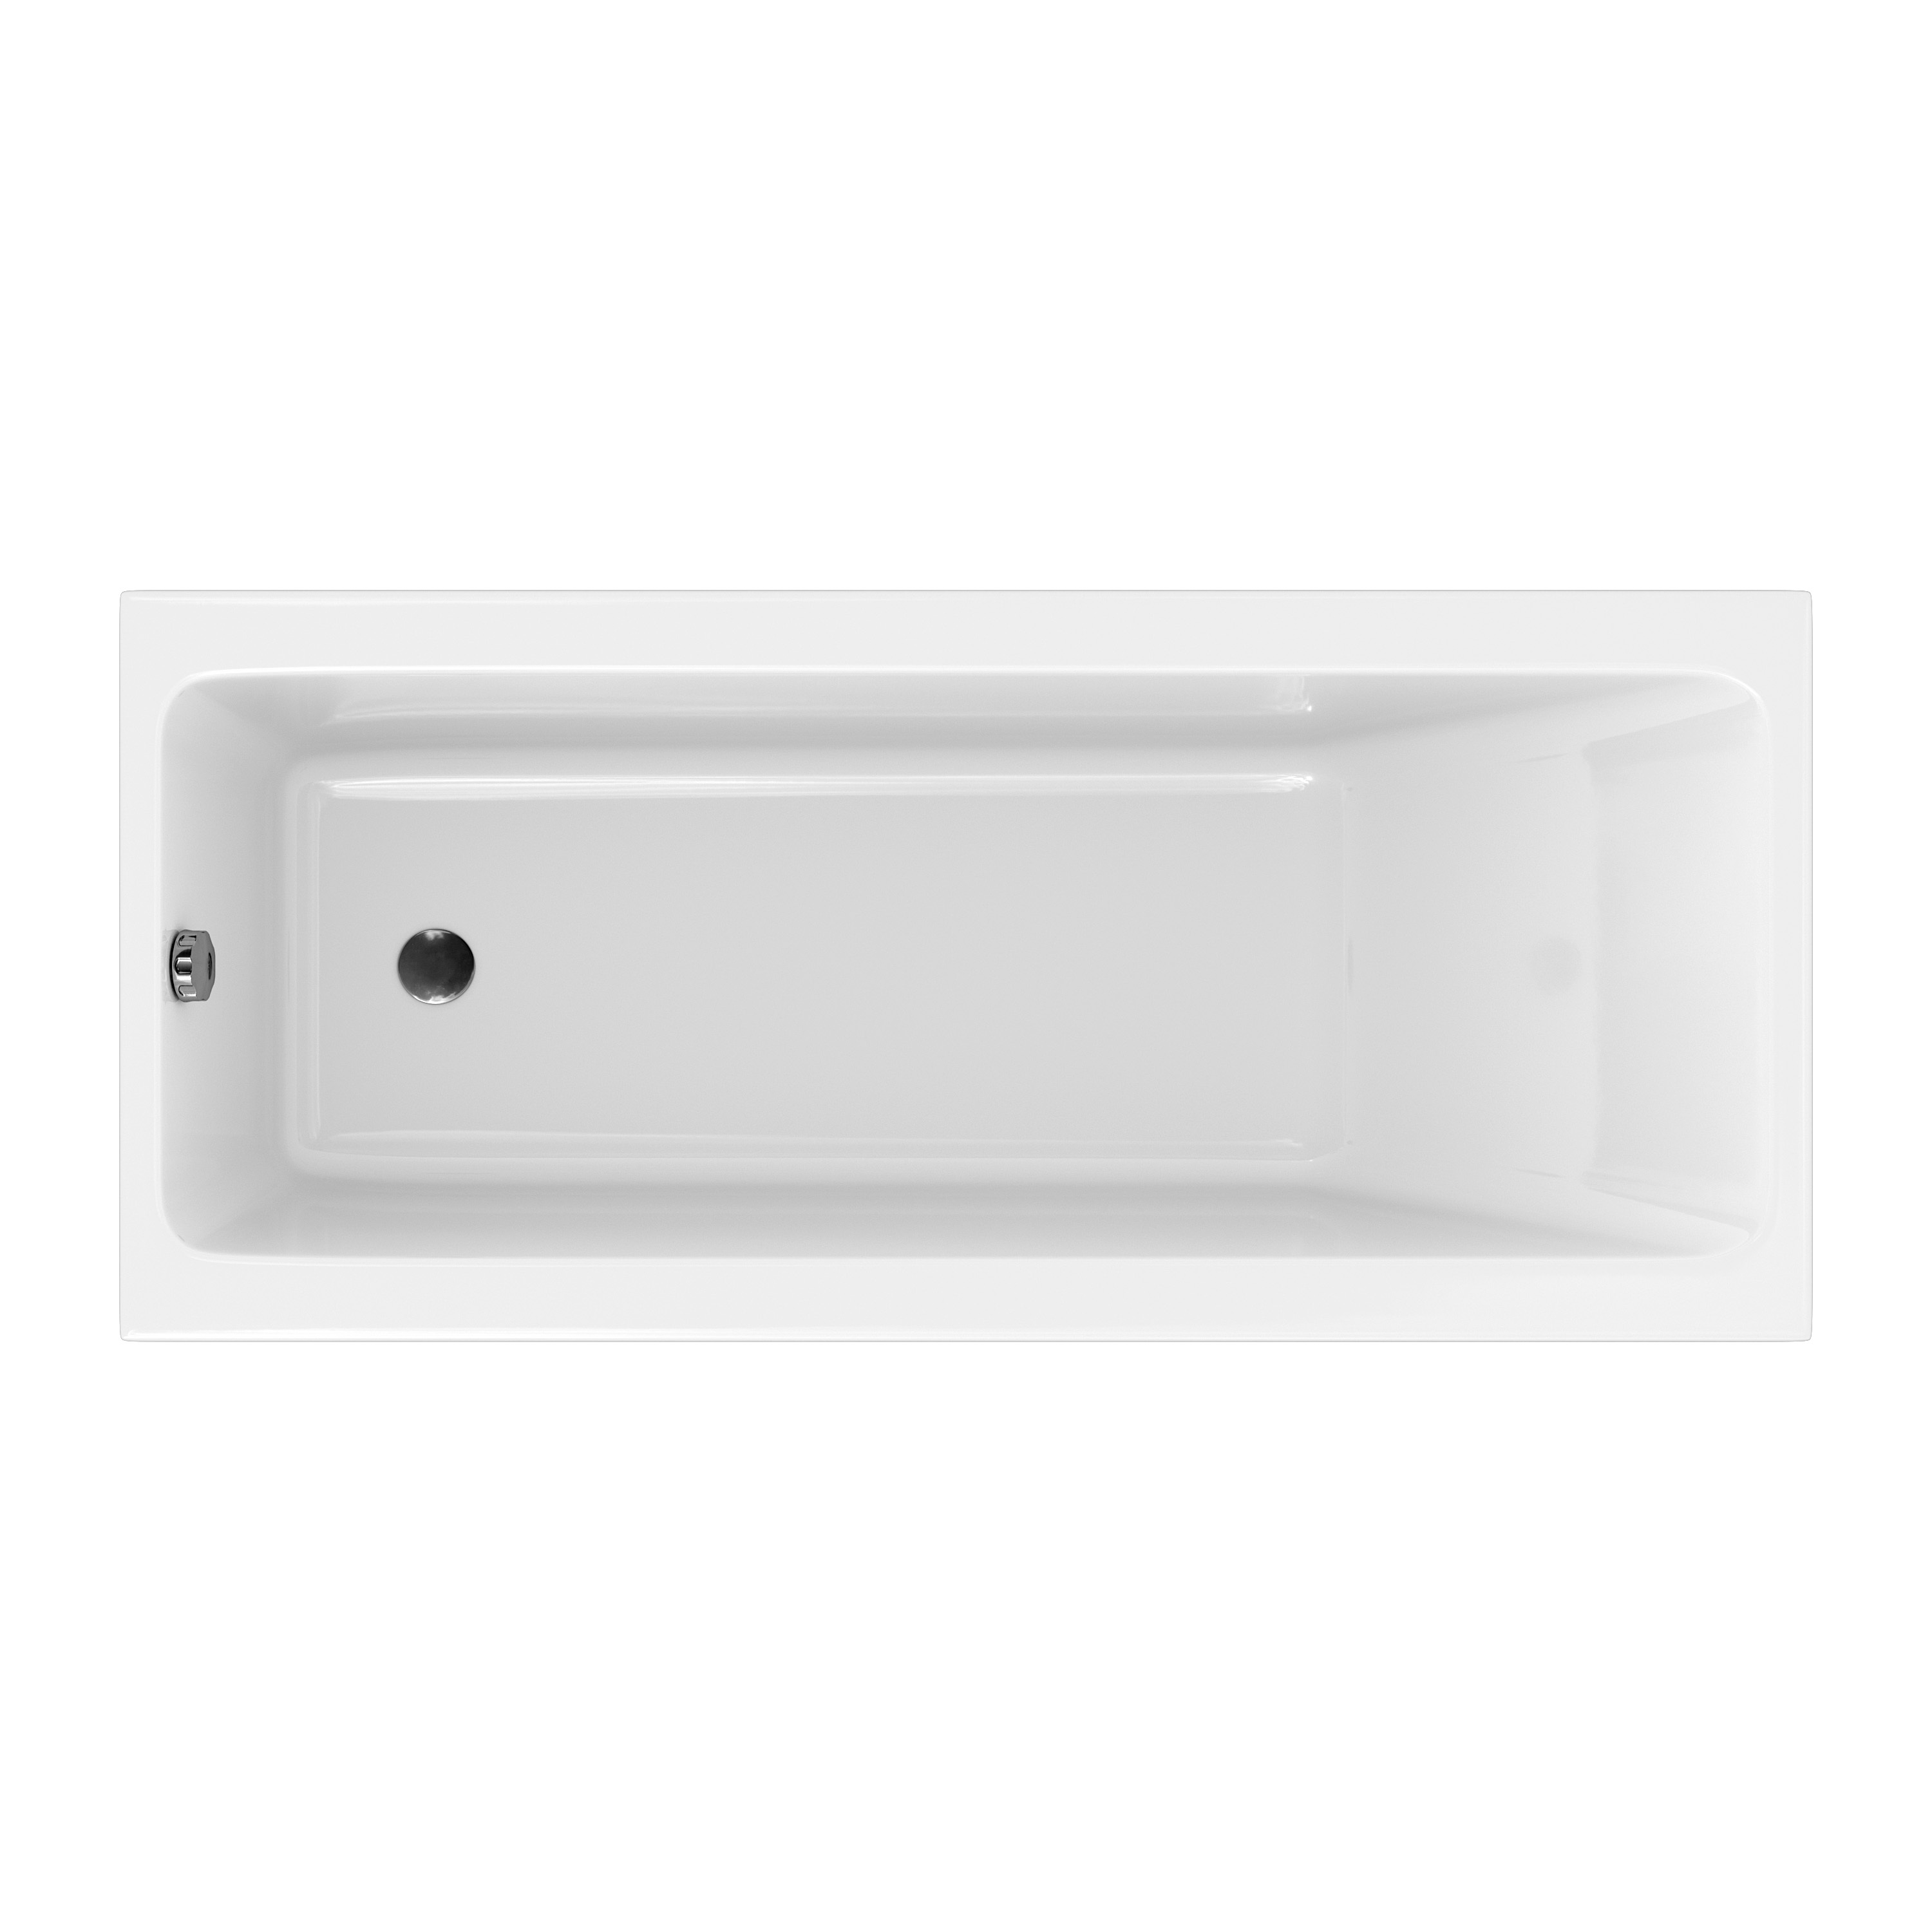 Акриловая ванна Cersanit CREA 180x80, P-WP-CREA*180NL